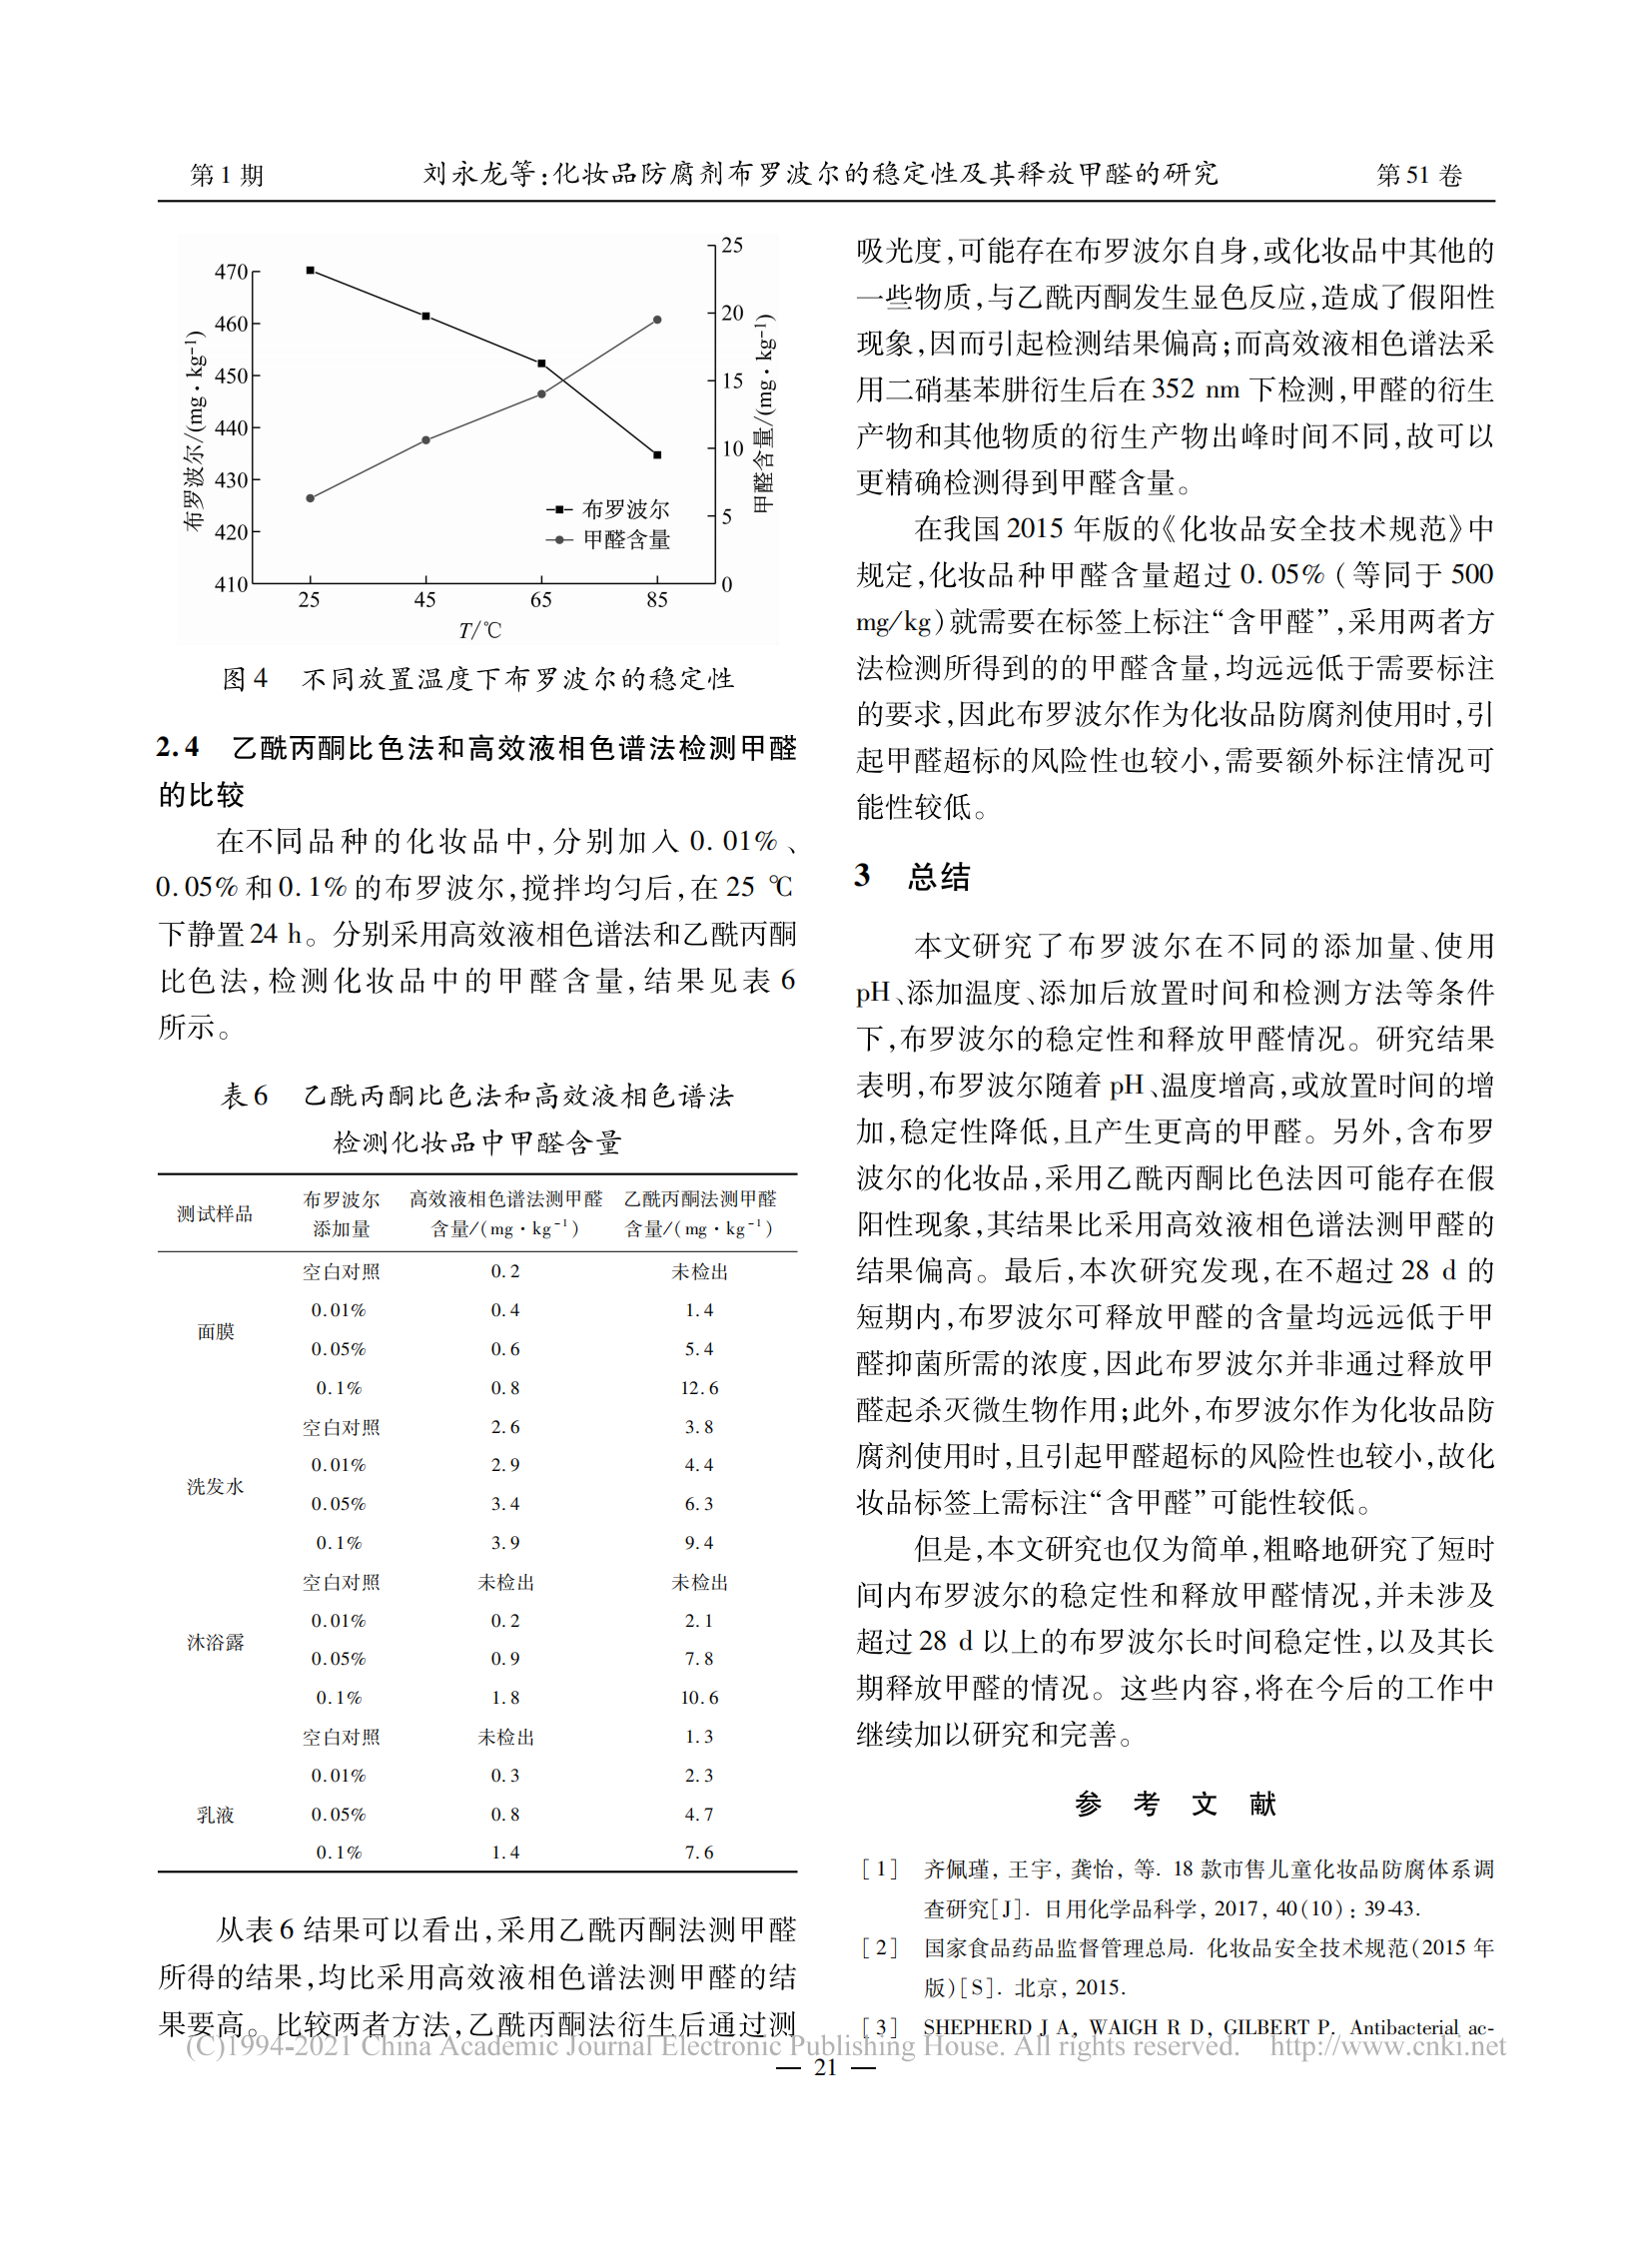 化妆品防腐剂布罗波尔的稳定性及其释放甲醛的研究_刘永龙_03.png